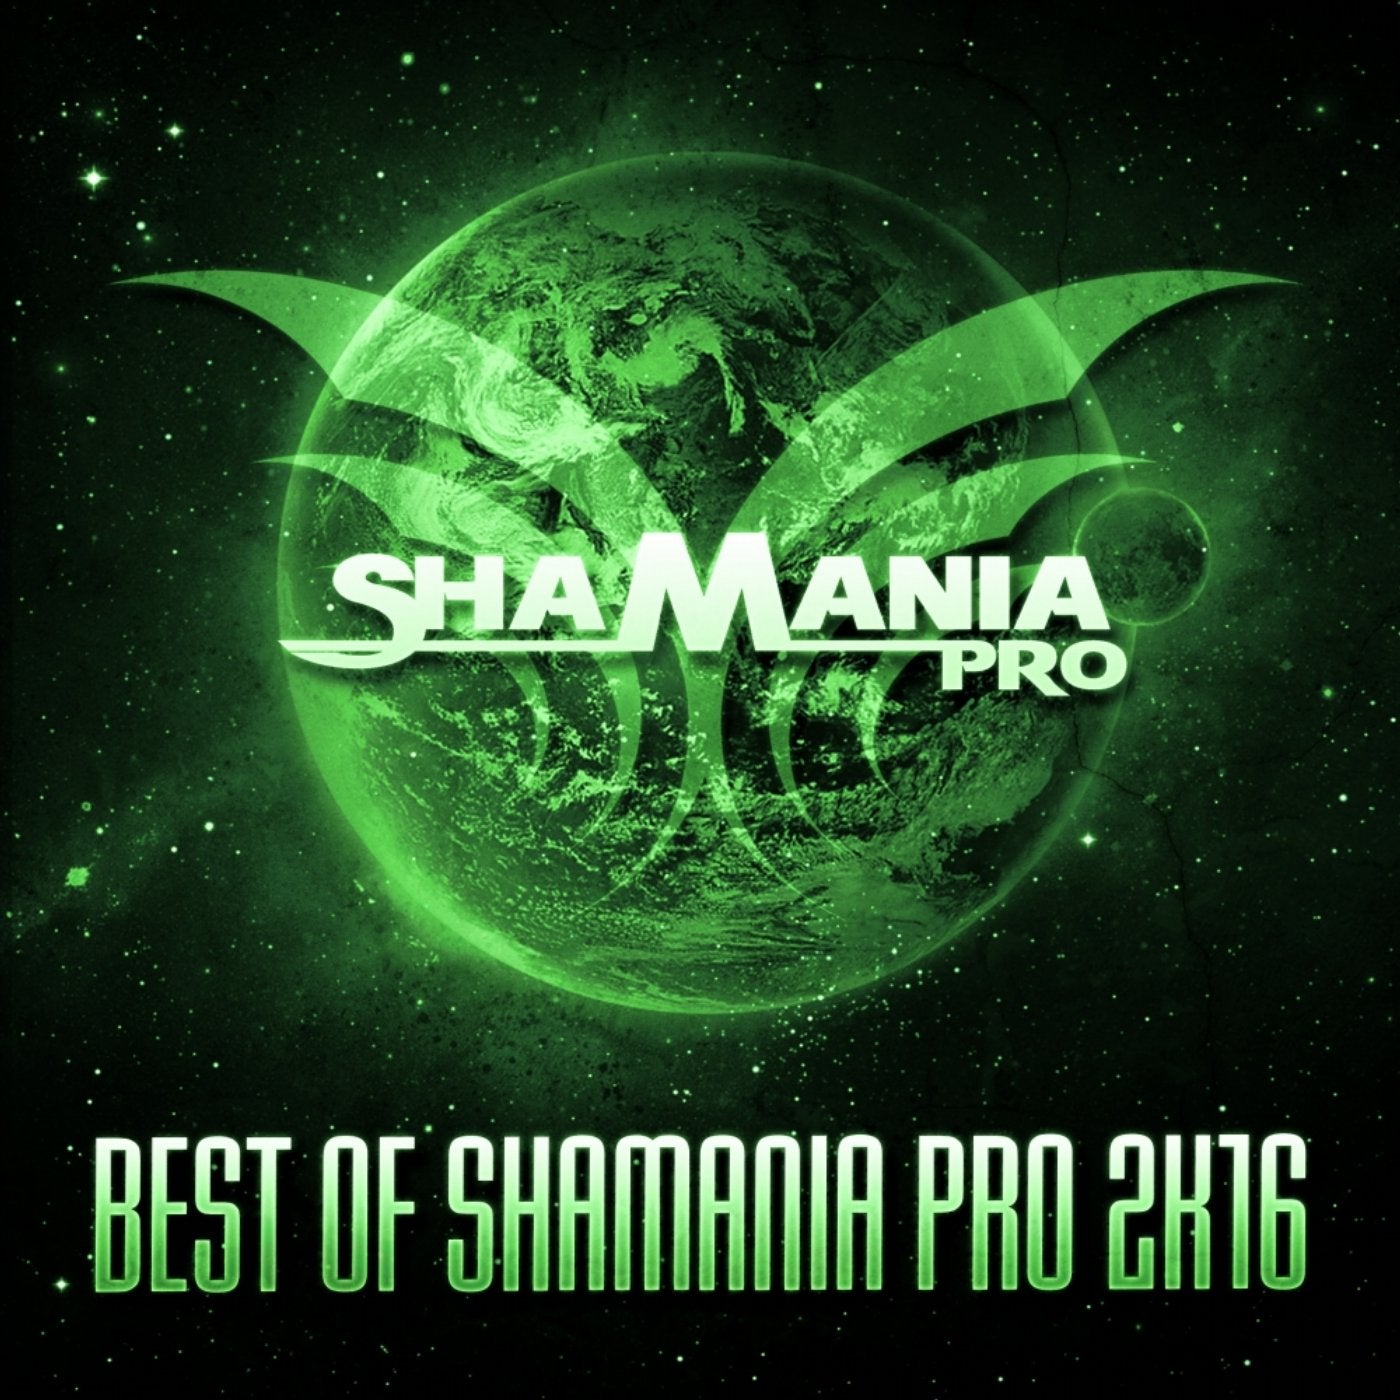 Best of Shamania Pro 2K16